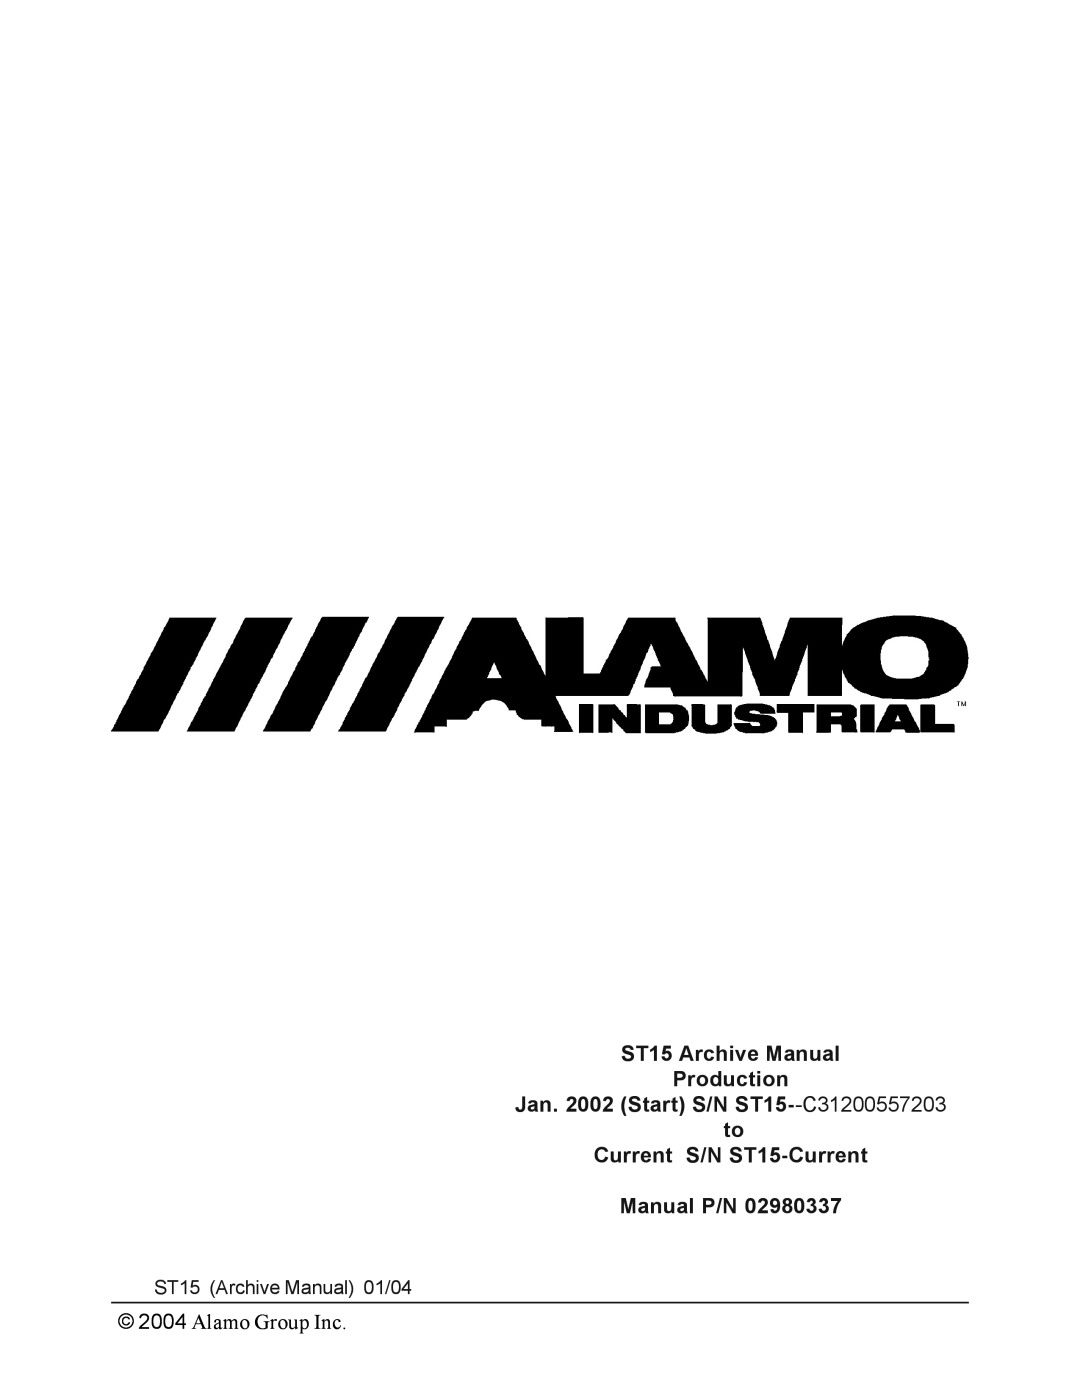 Alamo ST10 ST15 Archive Manual Production Jan. 2002 Start S/N ST15--C31200557203, to Current S/N ST15-Current Manual P/N 